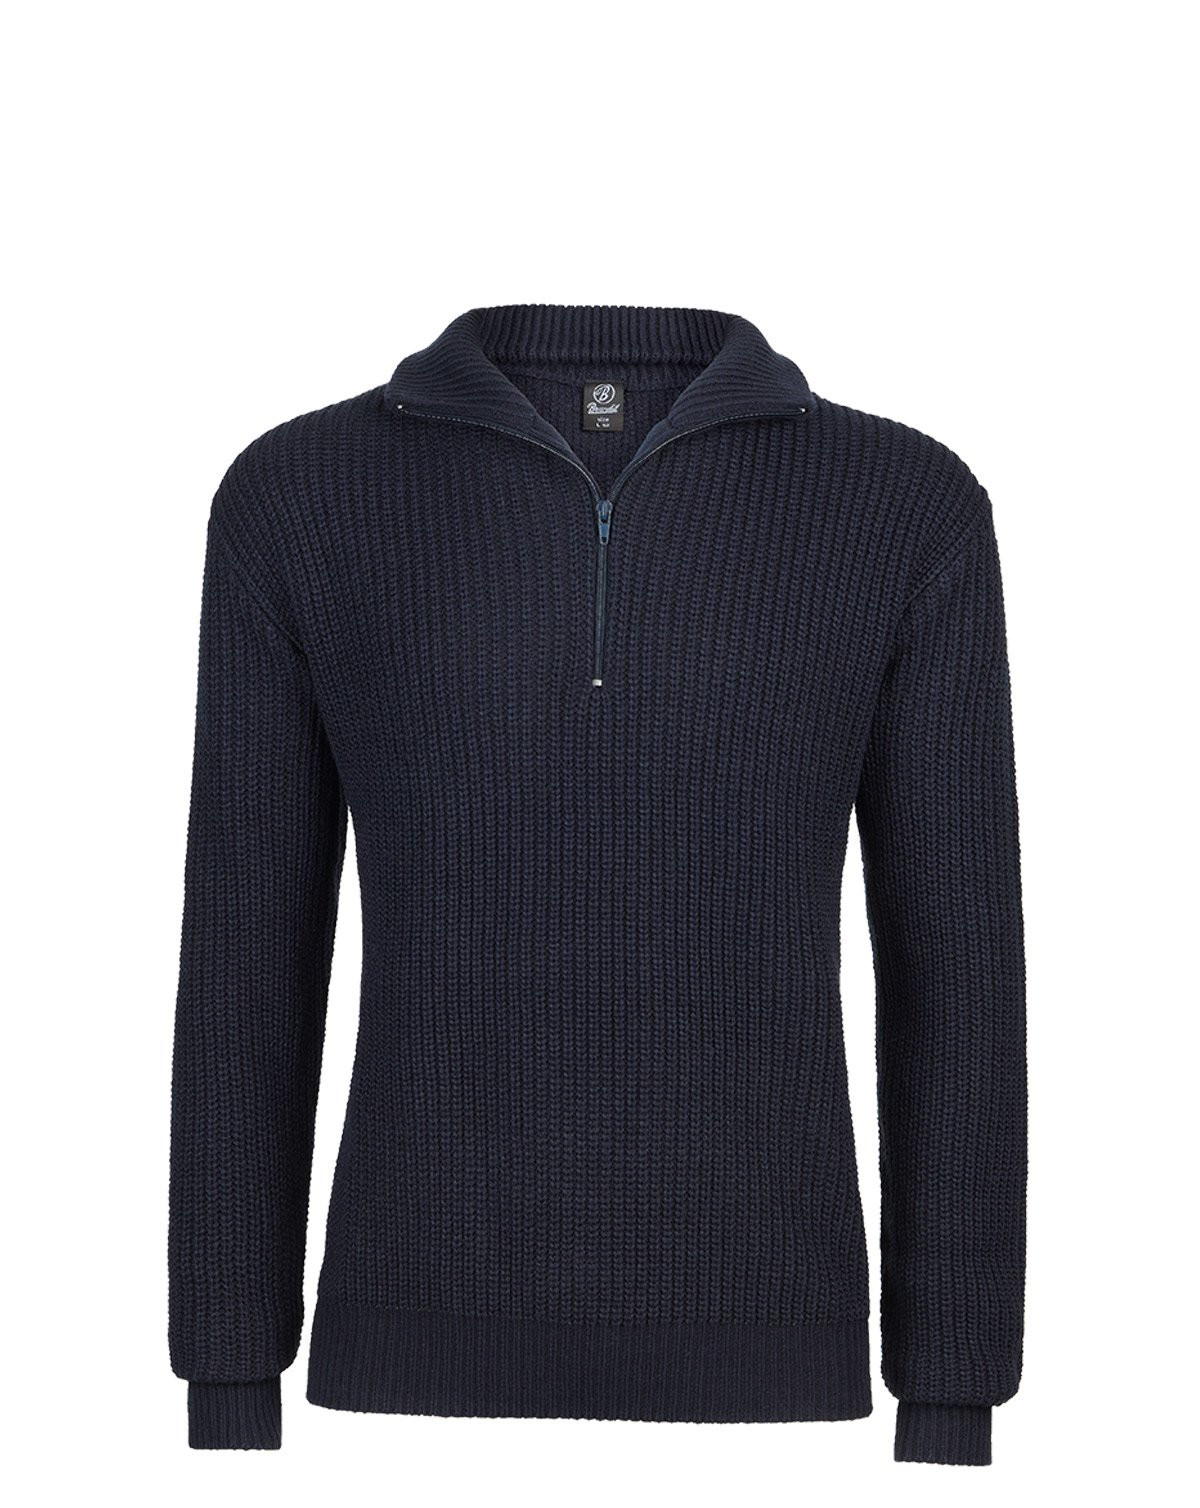 Brandit Marine Pullover Troyer Sweater (Navy, XL)